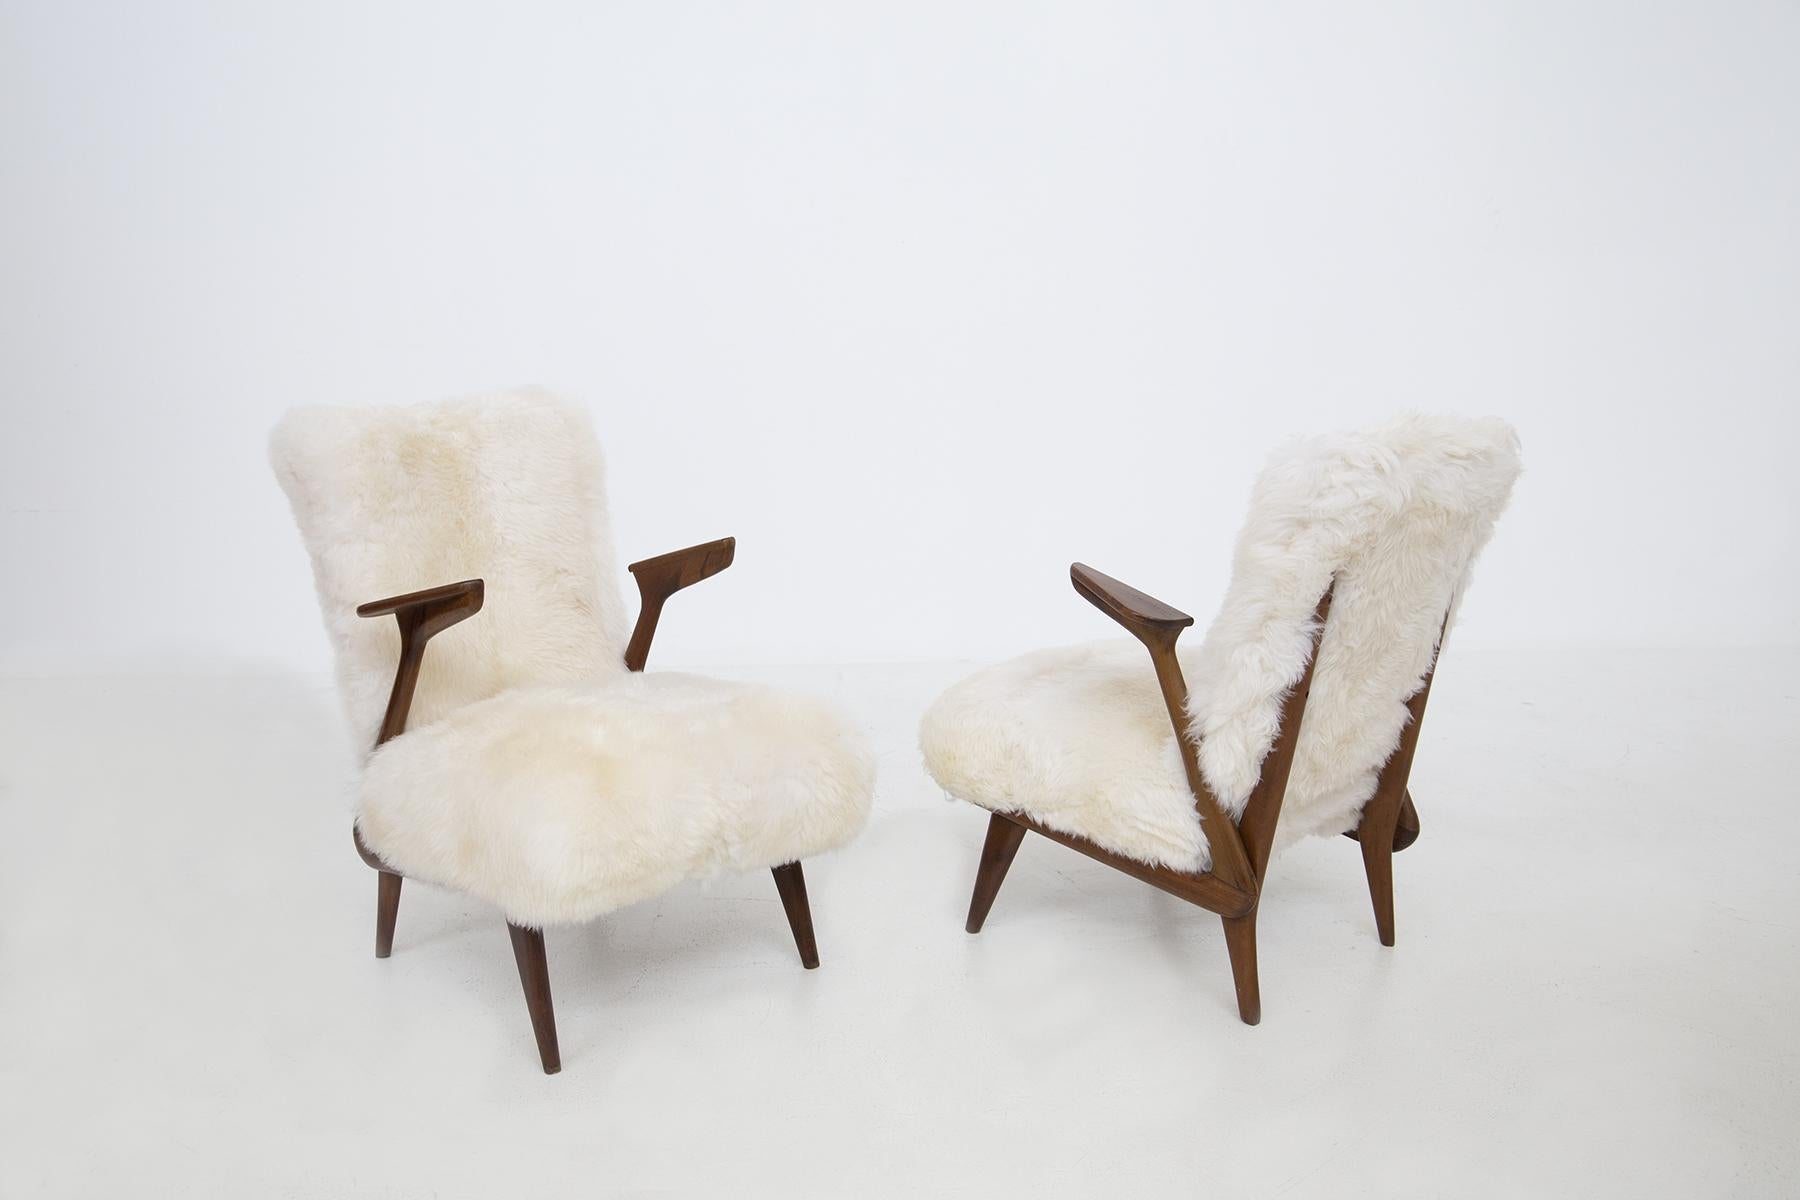 Elegantes Paar italienischer Sessel, die Giuseppe Scapinelli aus den 1950er Jahren zugeschrieben werden. Die Sessel sind aus Walnussholz gefertigt. Die Sessel haben eine lineare und anthropomorphe Form, bei der die Armlehnen in Dreiecksform